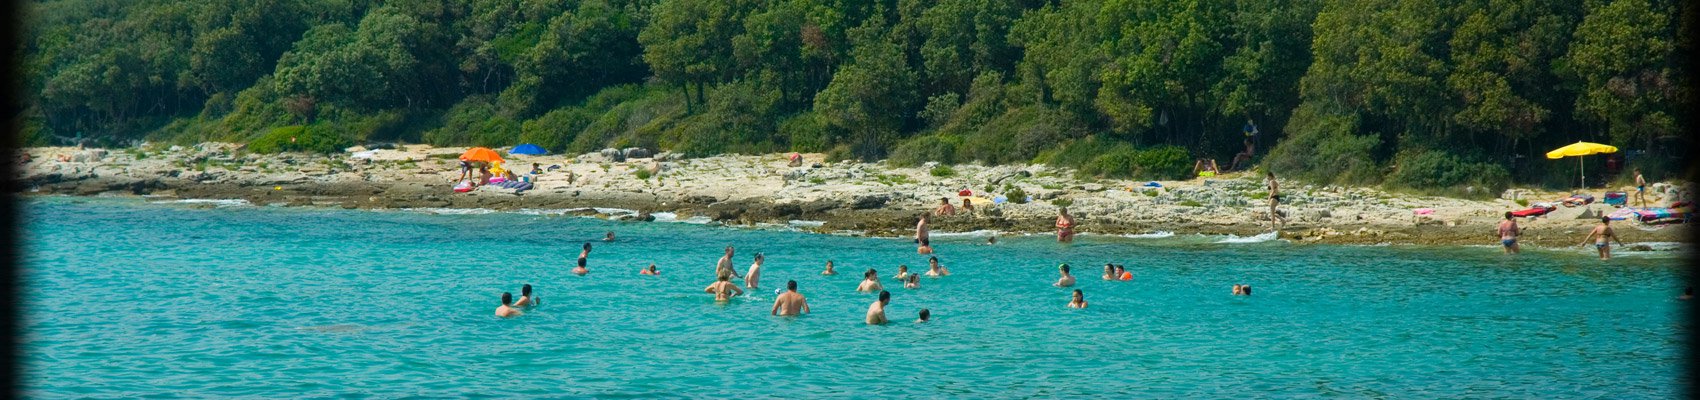 Spiaggia Cisterna